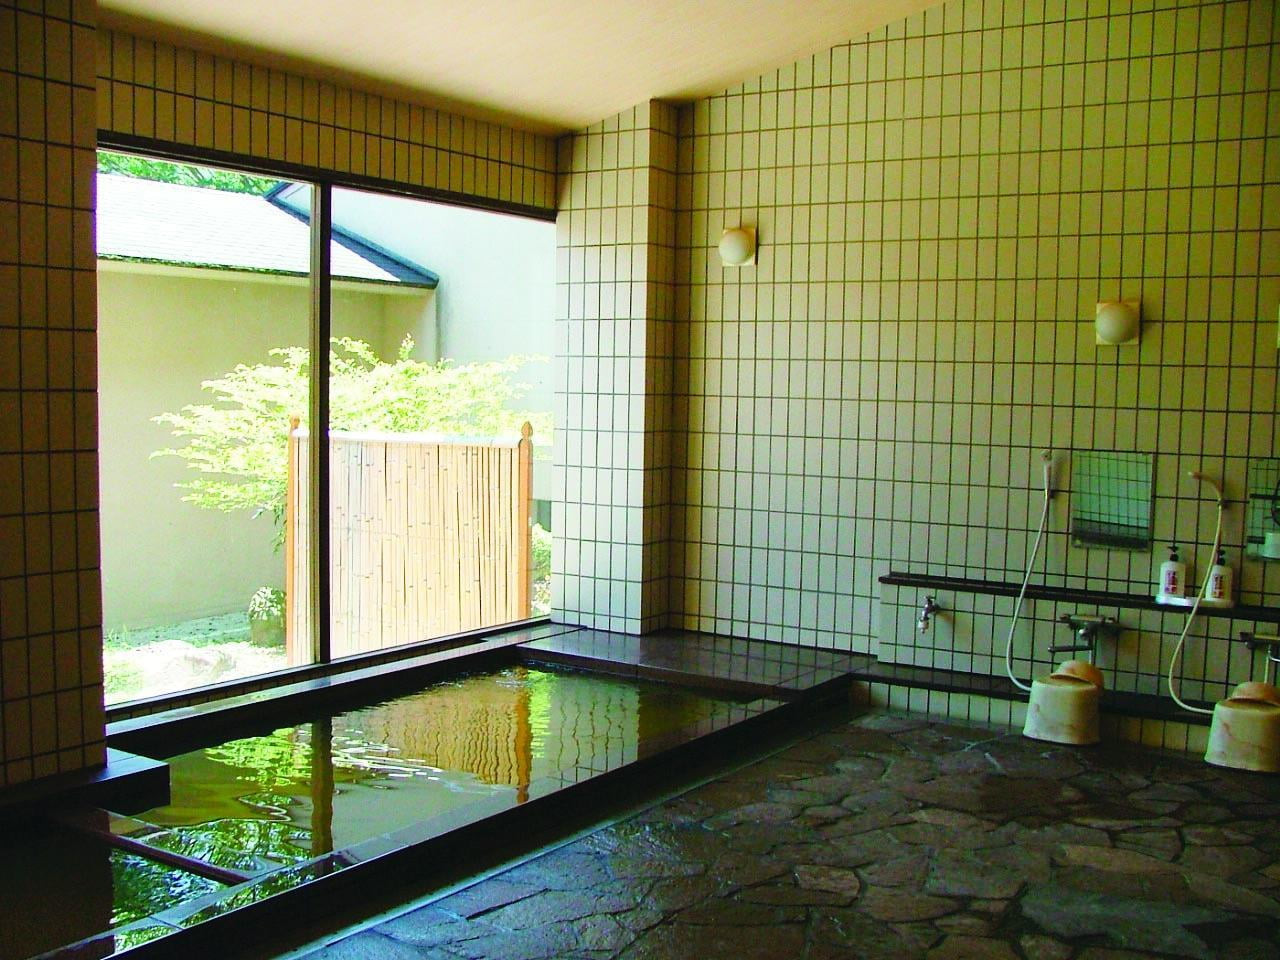 大谷にしき荘の温泉の写真.jpg